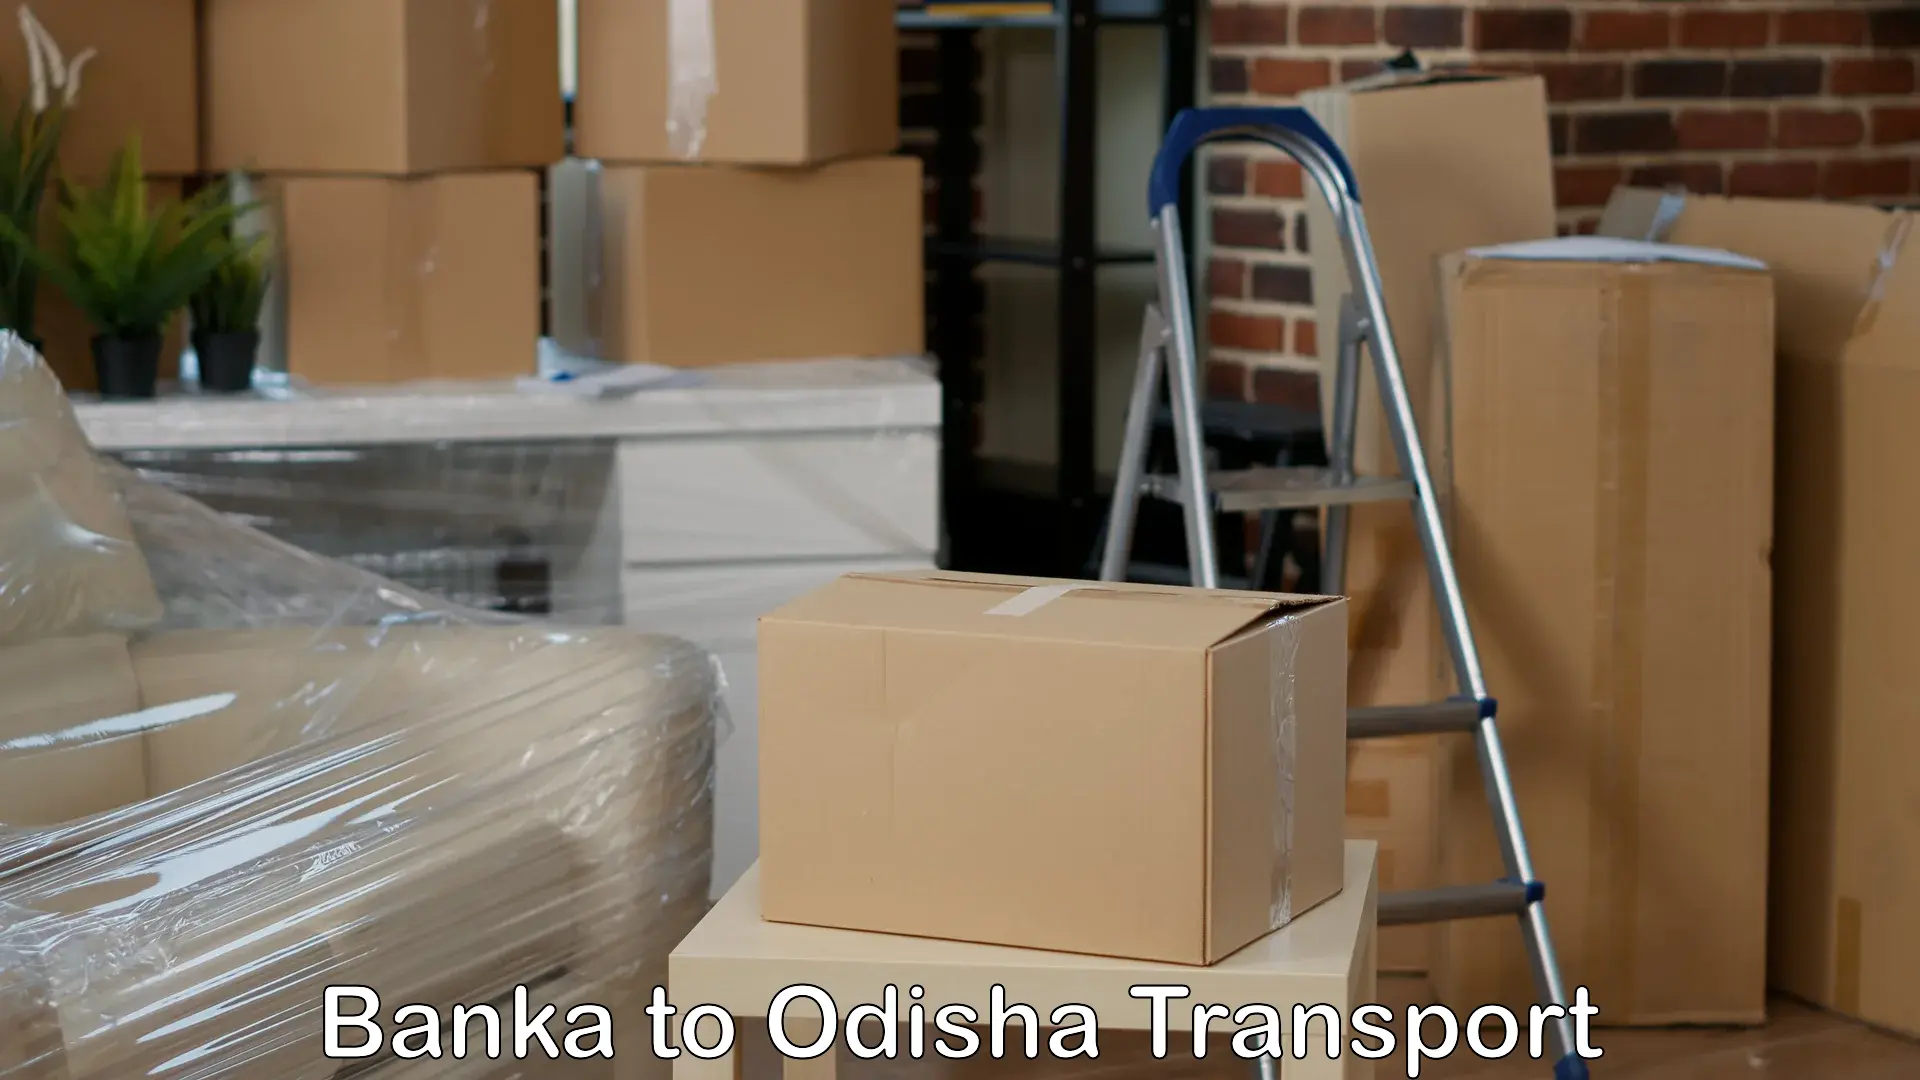 Interstate transport services Banka to Muniguda